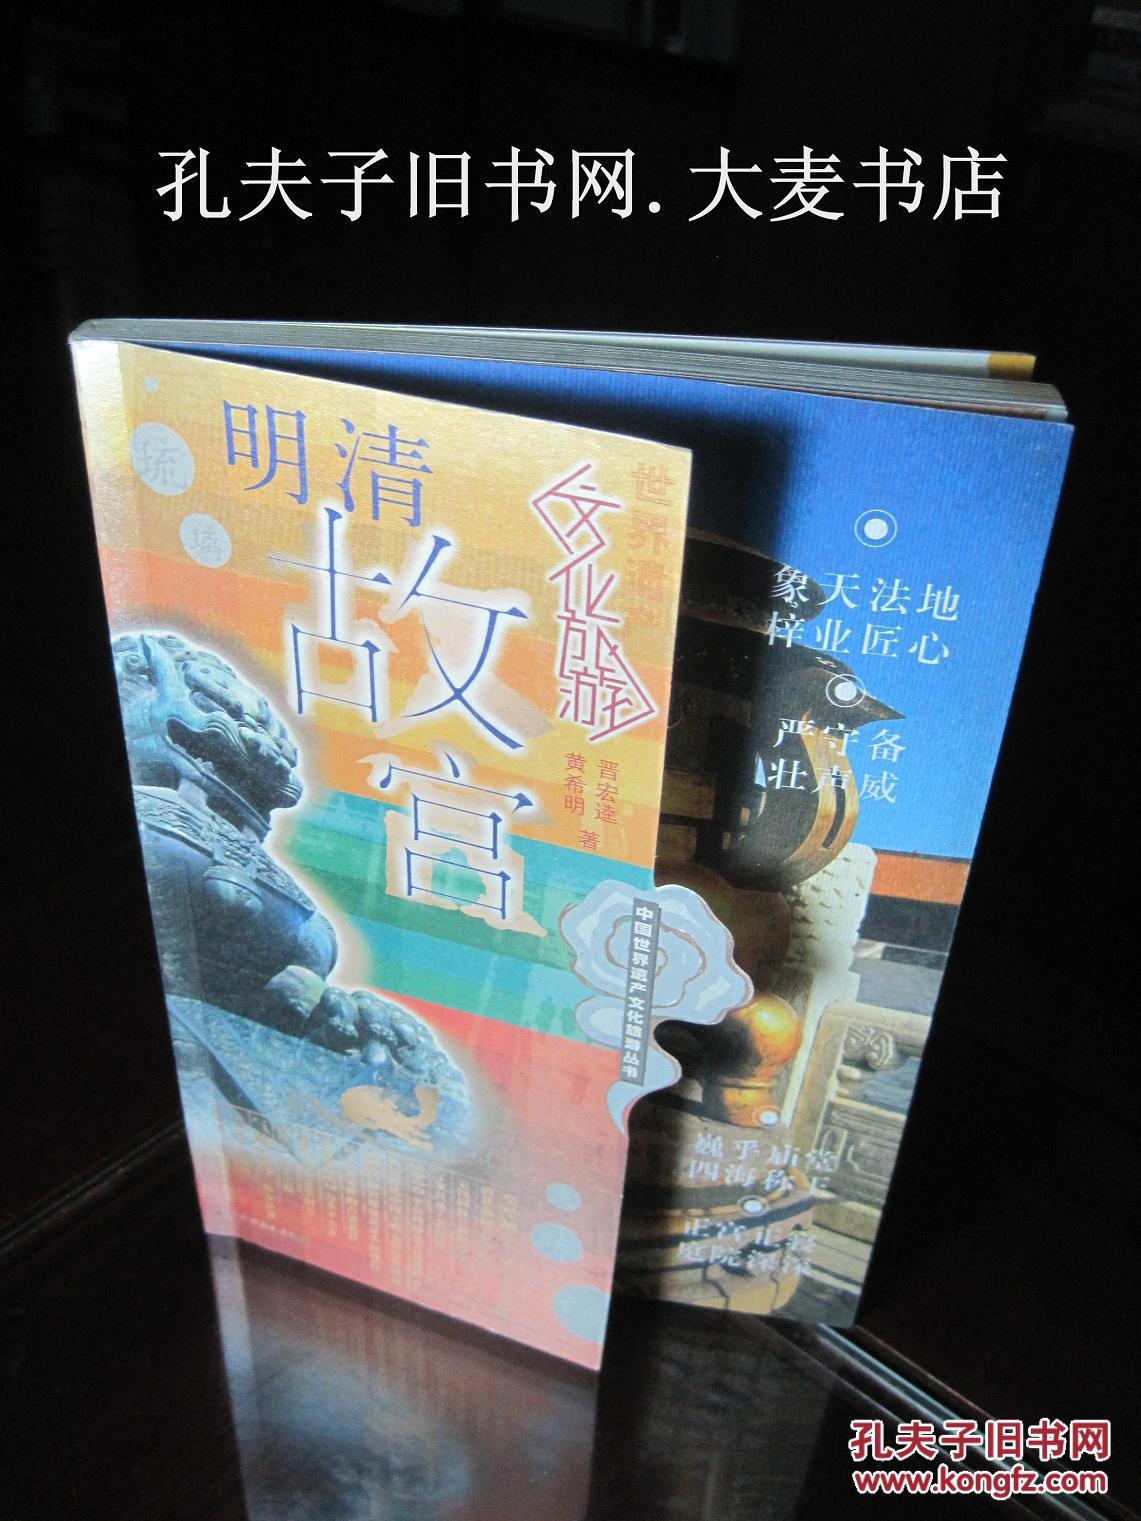 《中国世界遗产文化旅游丛书:明清故宫》水利